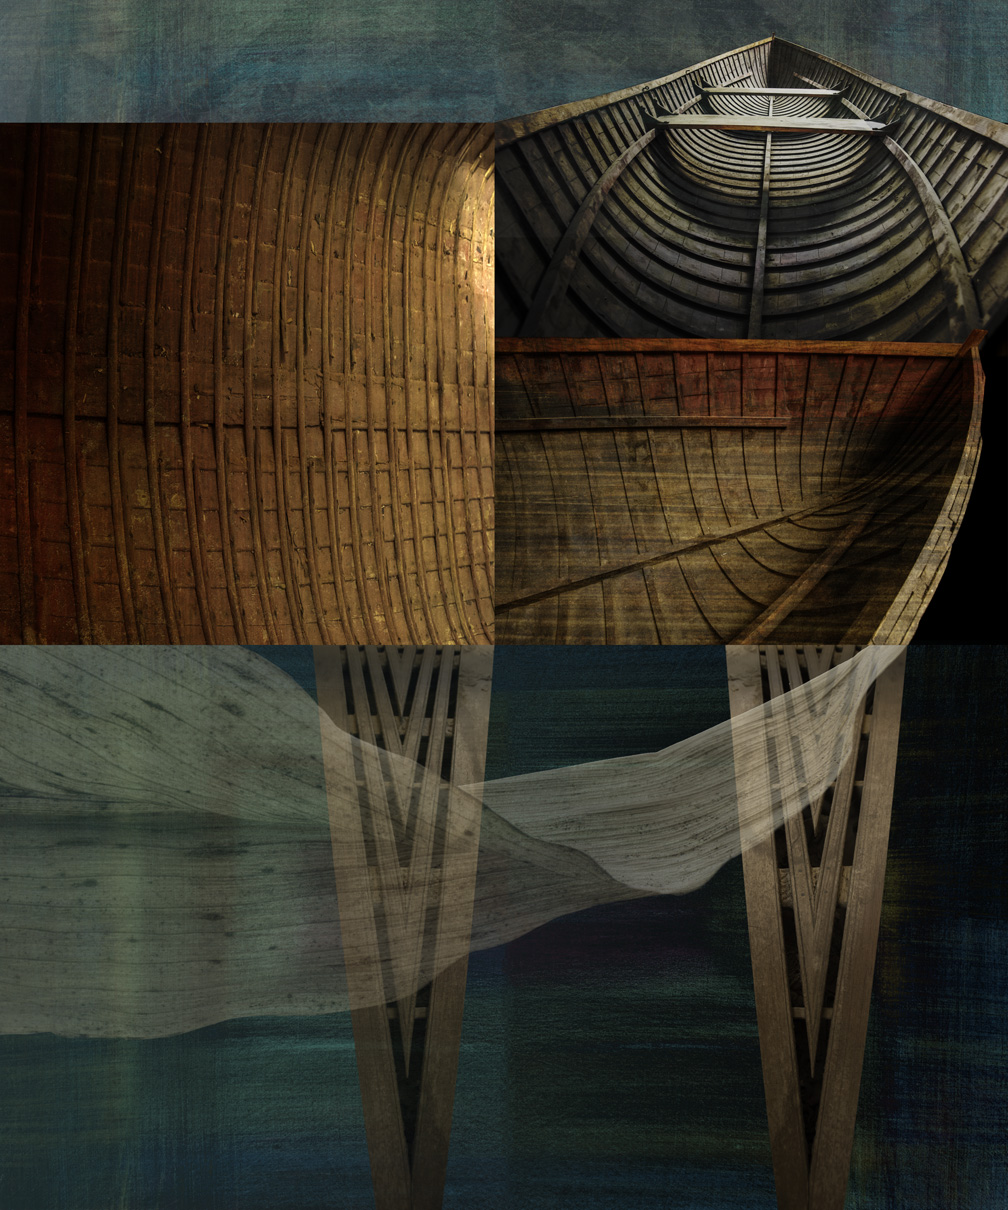 Boat Totem 3